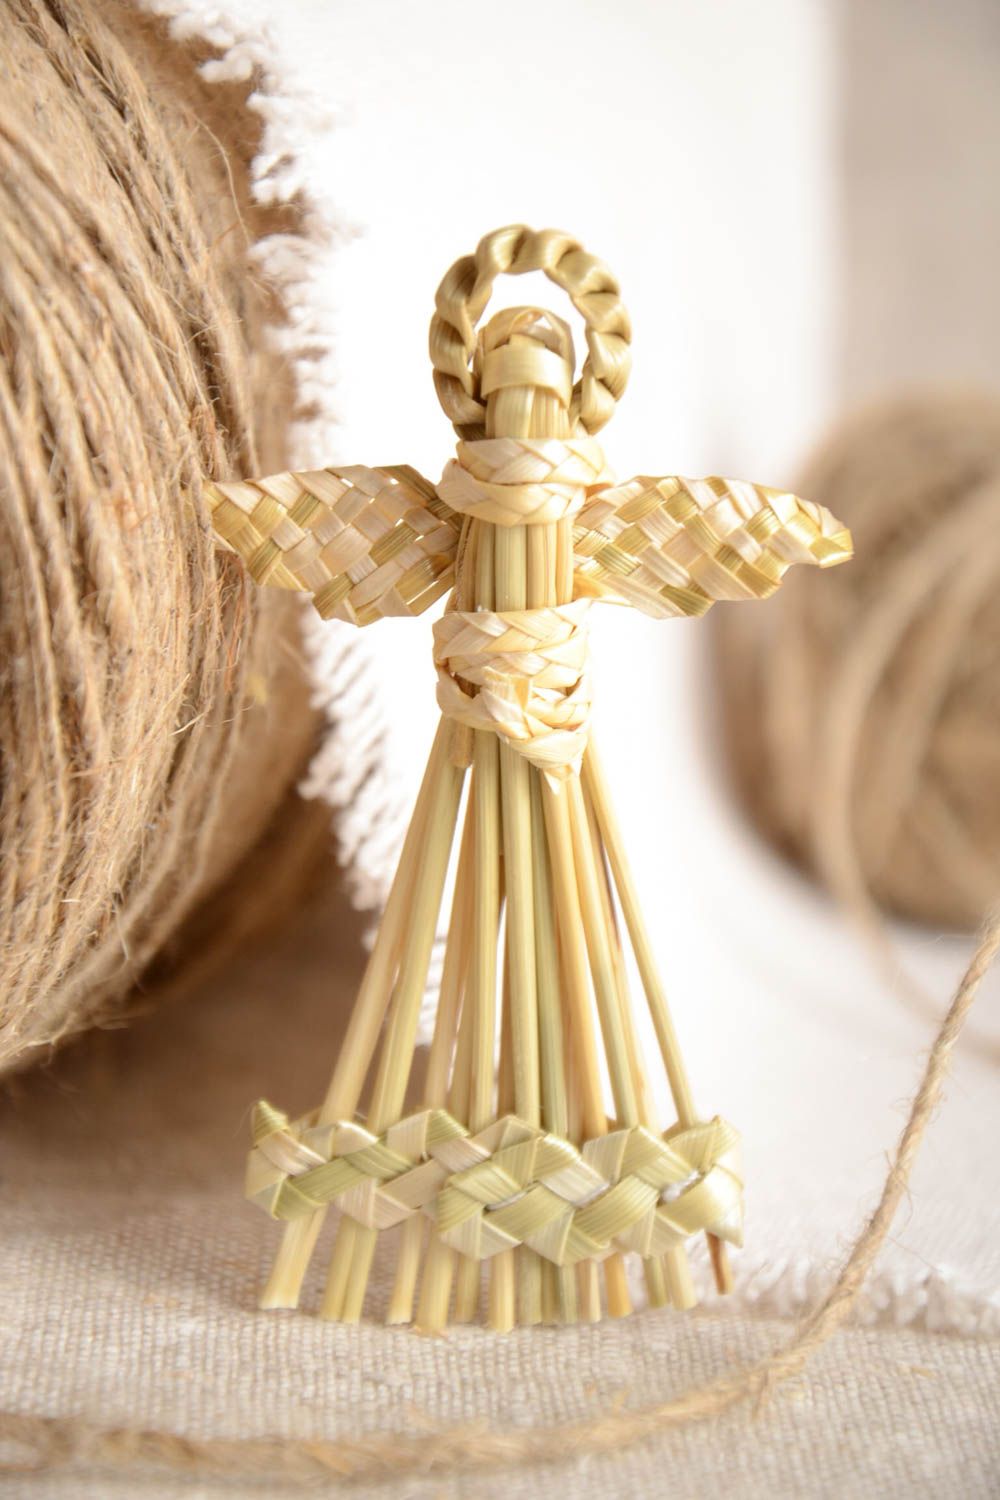 Интерьерная подвеска плетеная из соломы ручной работы в виде ангела красивая фото 1